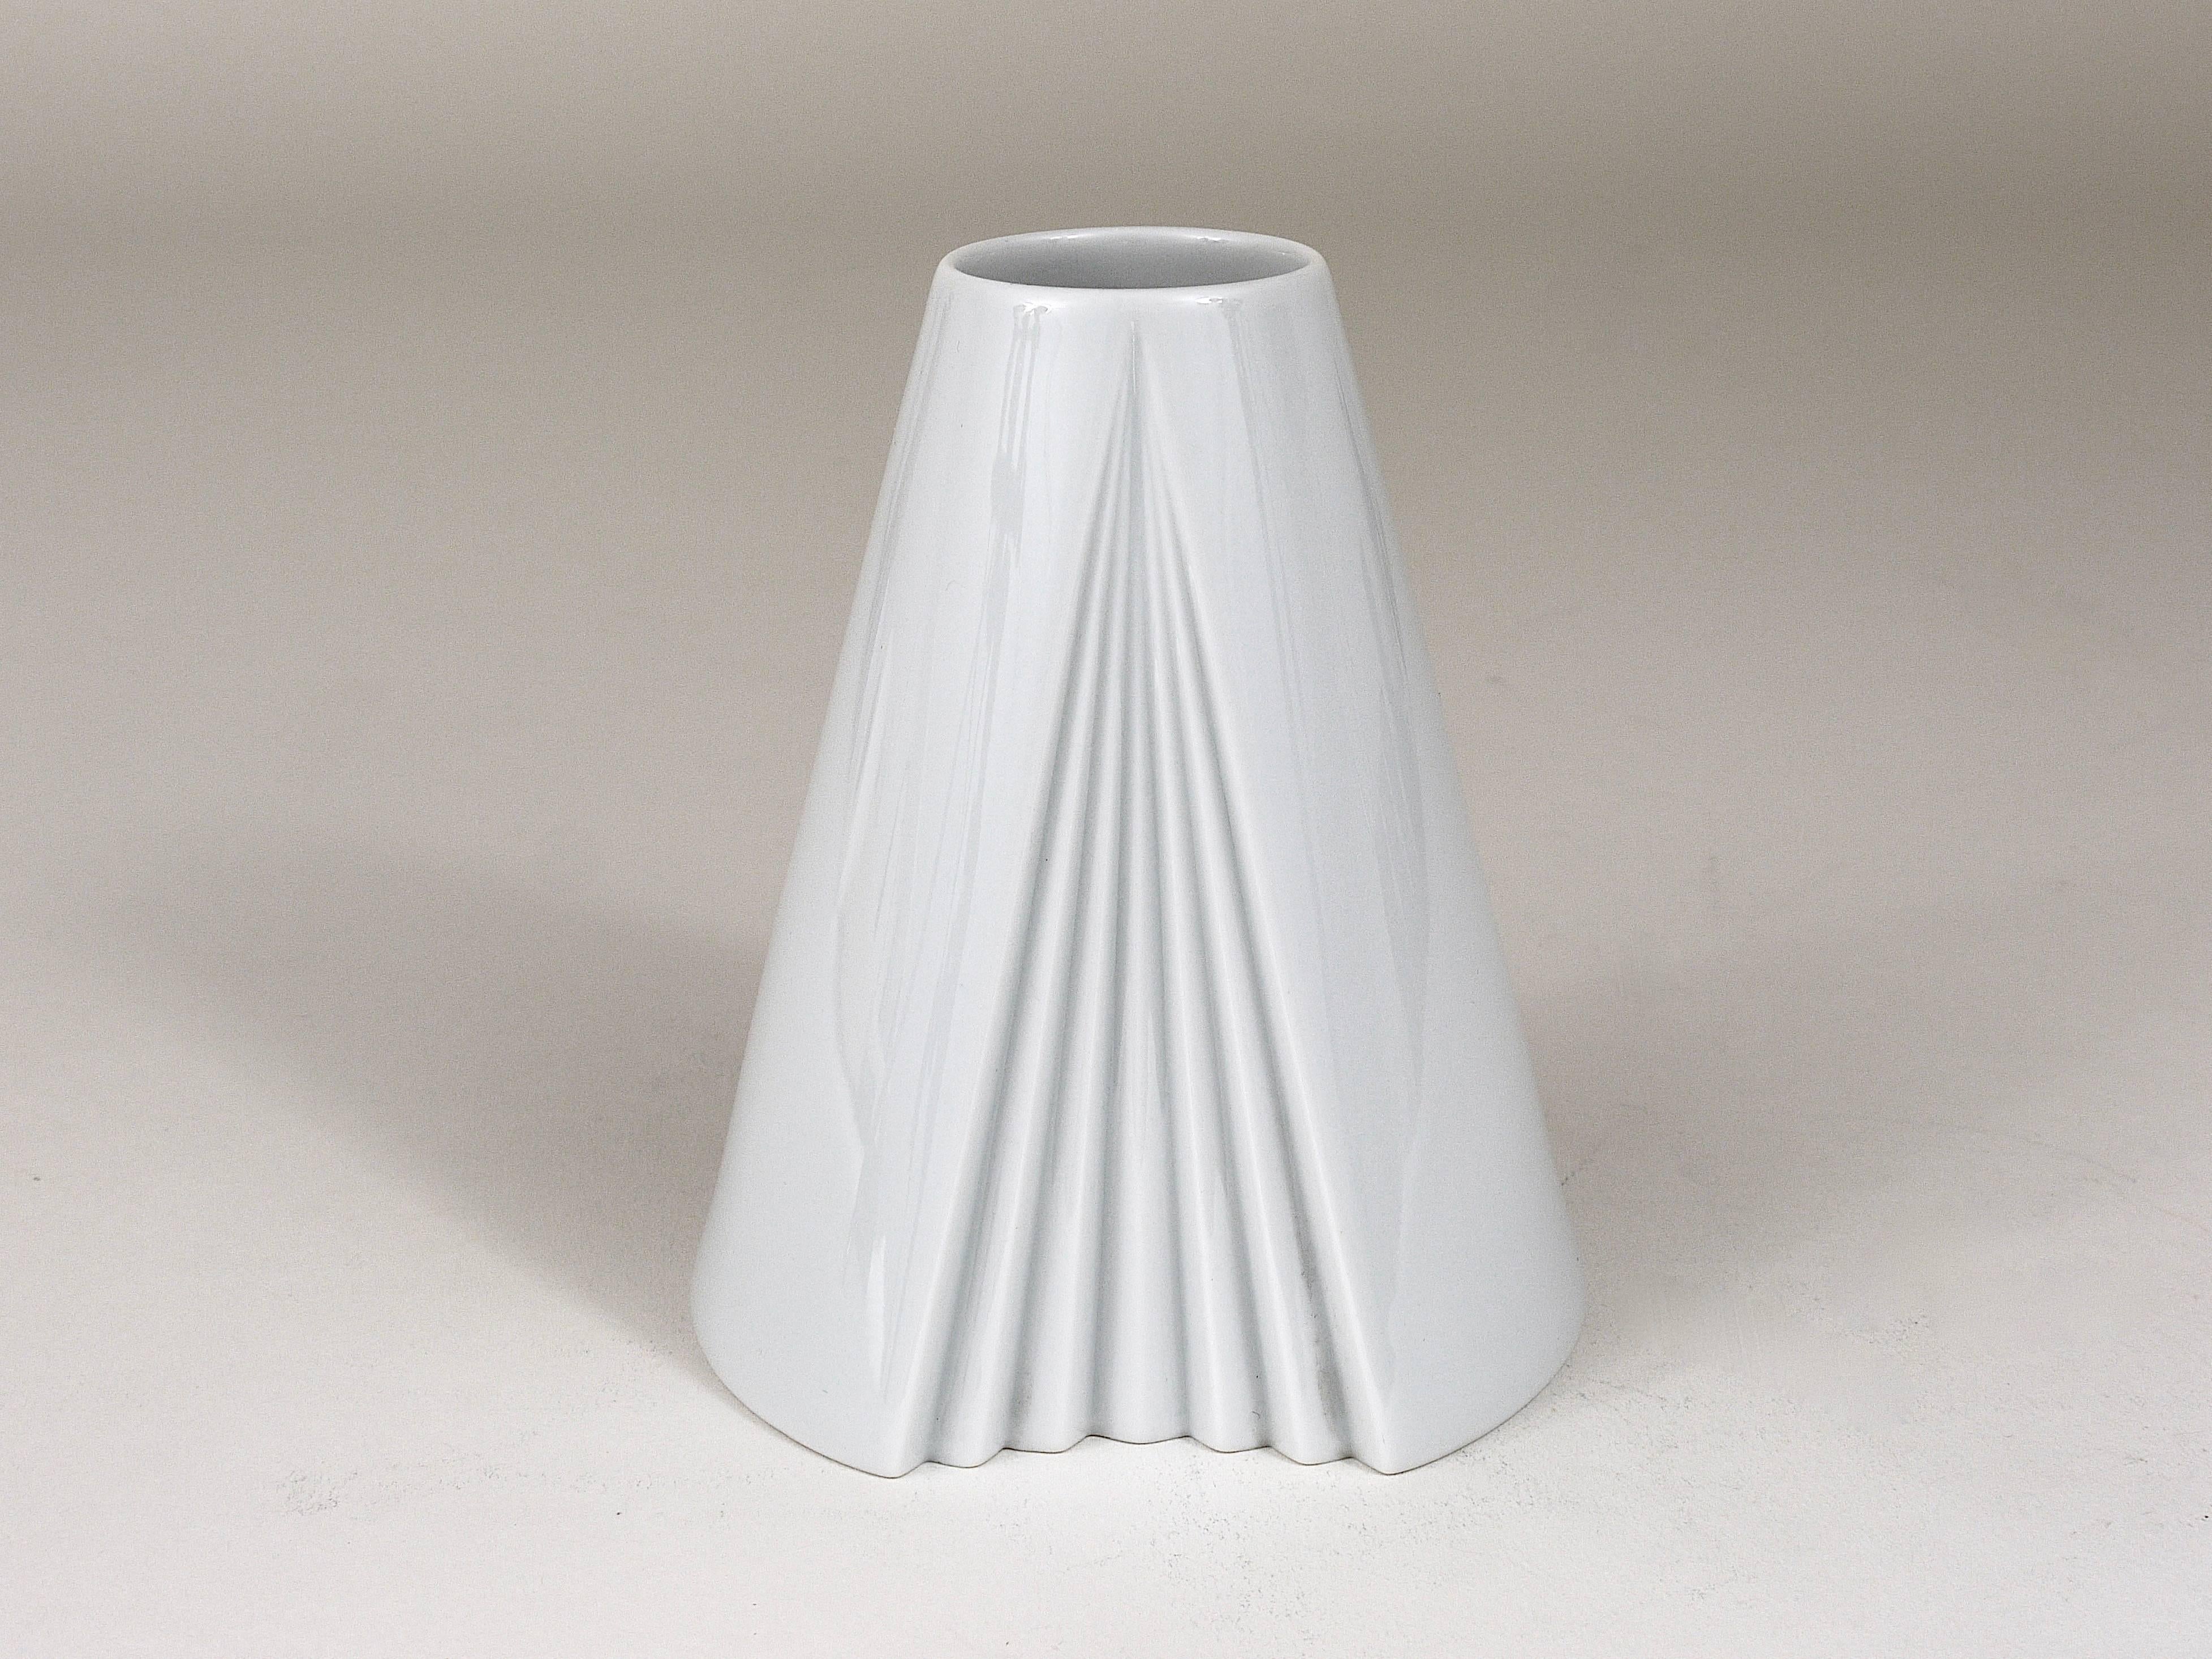 Eine schöne weiße, vollständig glasierte, kegelförmige Porzellanvase Plissee aus den 1980er Jahren, entworfen von Ambrogio Pozzi im Jahr 1985, ausgeführt von Rosenthal, Deutschland. In ausgezeichnetem Zustand.